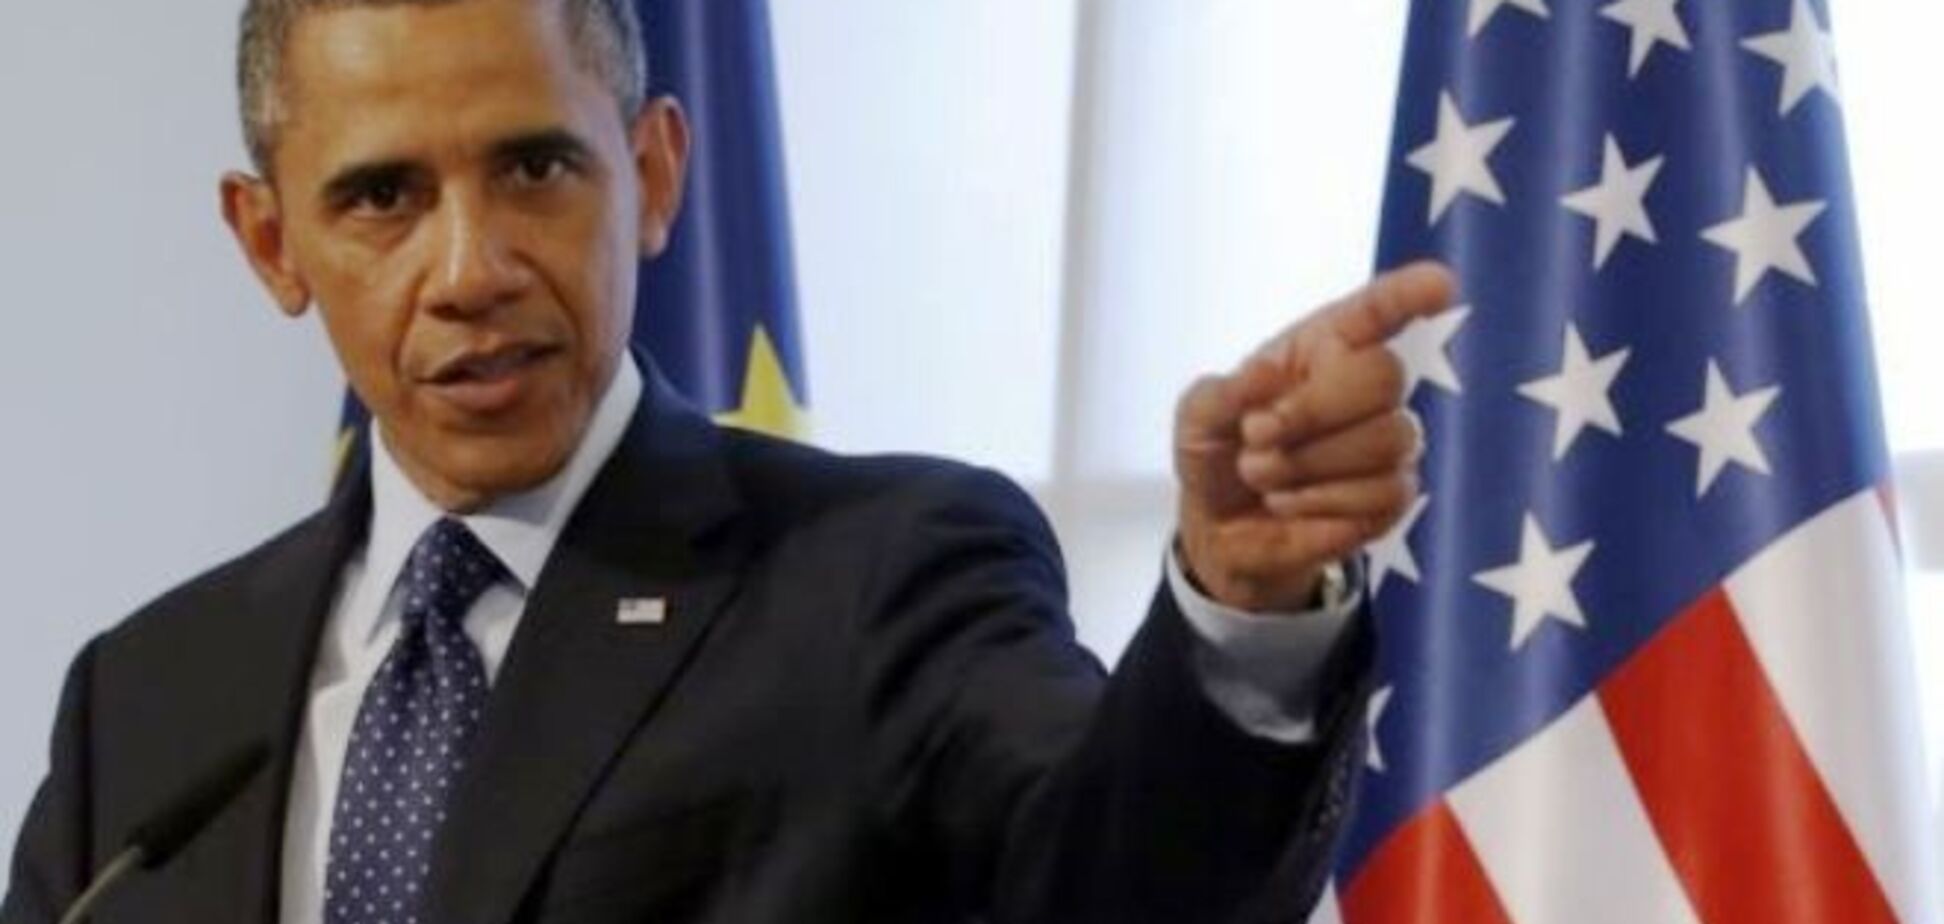 Обама склоняется к 'умеренному' удару по Сирии